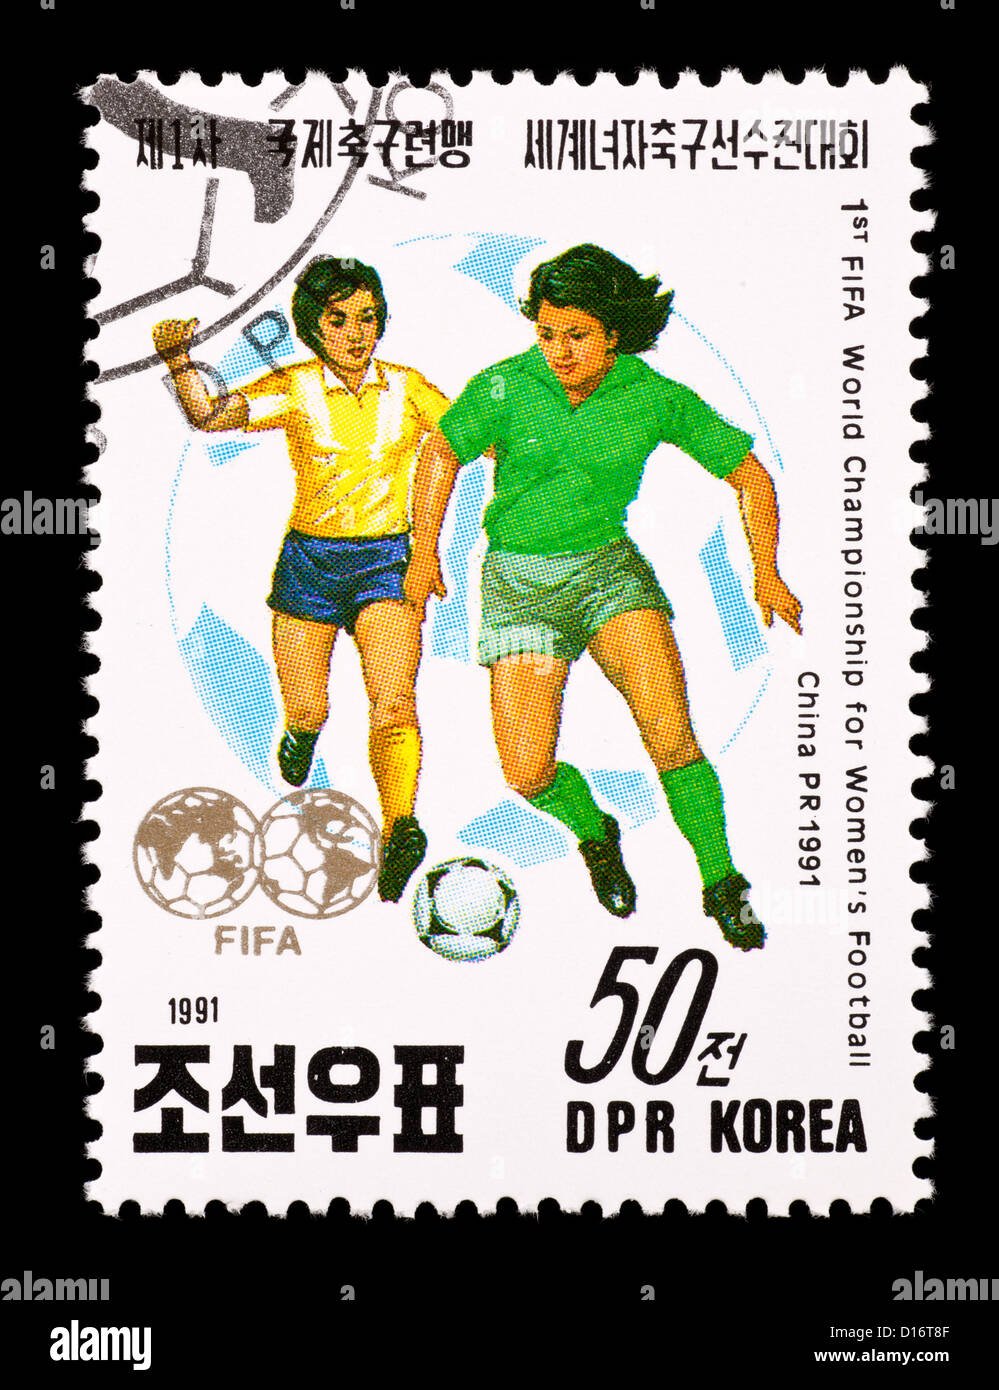 Timbre-poste de la Corée du Nord, les femmes représentant des joueurs de football, publié pour la première Coupe du Monde féminine de soccer. Banque D'Images